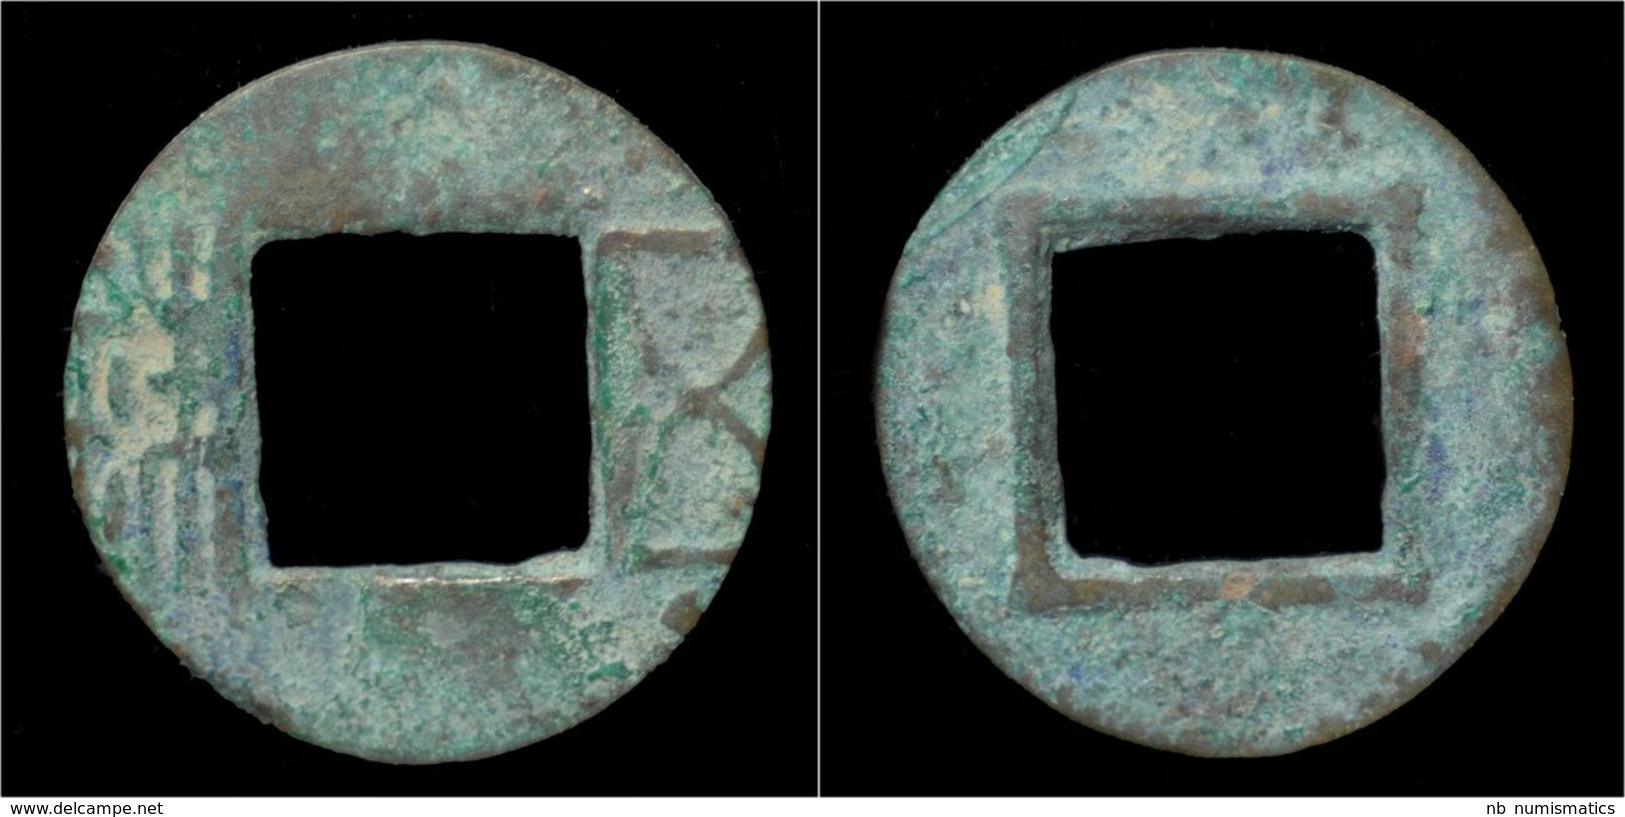 China Liang Dynasty Emperor Wu - Wu Zhu Cash - Chinesische Münzen